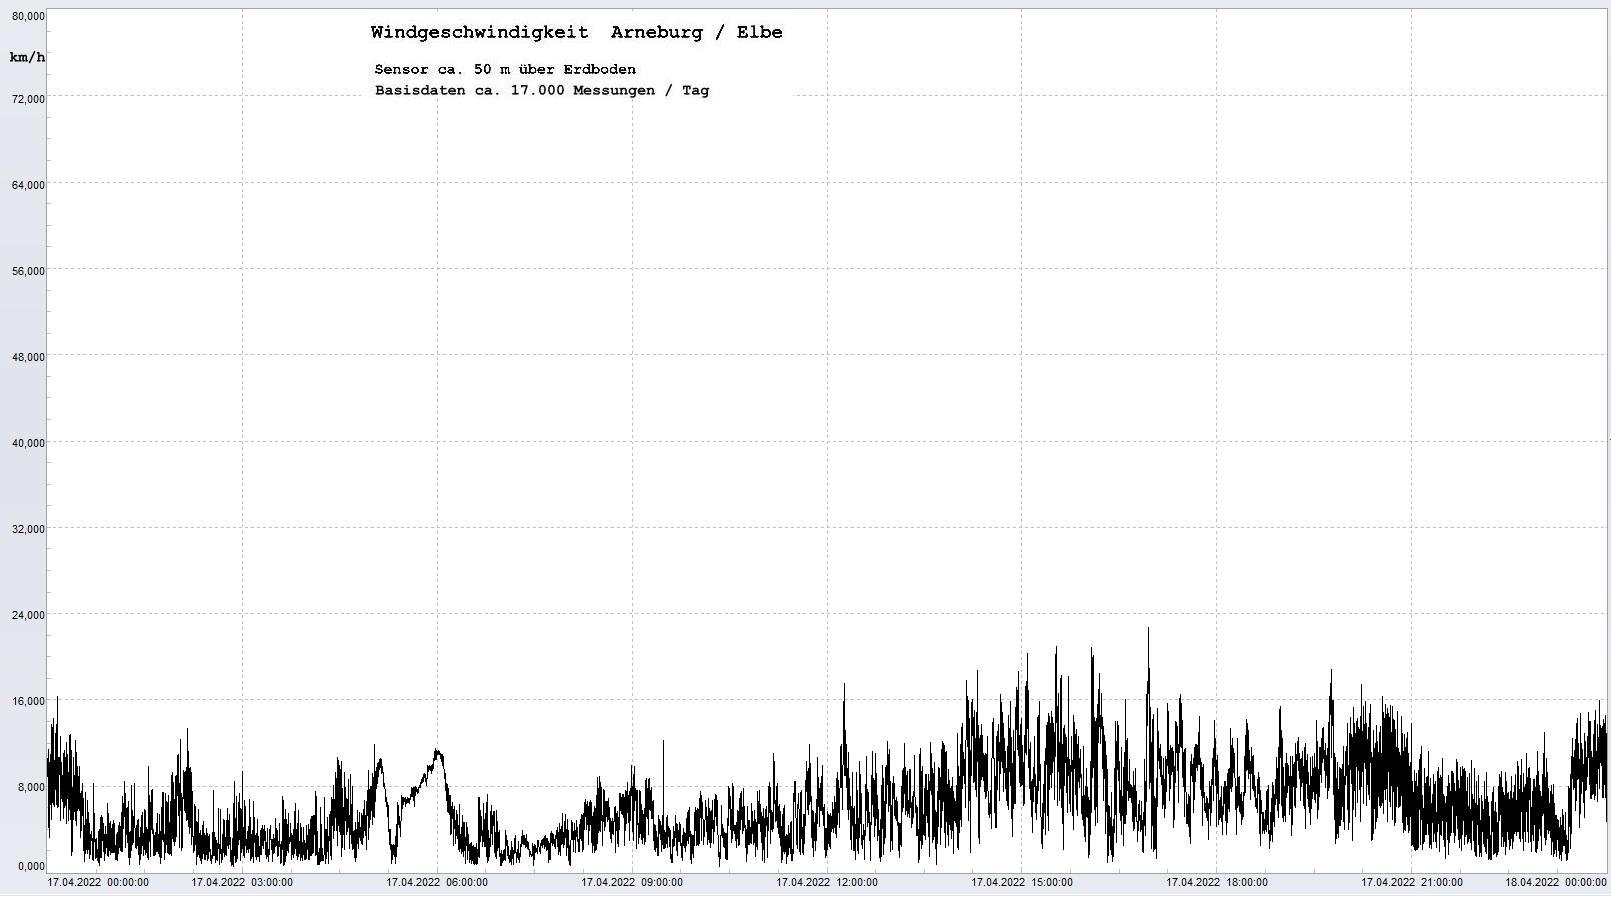 Arneburg Tages-Diagramm Winddaten, 17.04.2023
  Diagramm, Sensor auf Gebude, ca. 50 m ber Erdboden, Basis: 5s-Aufzeichnung